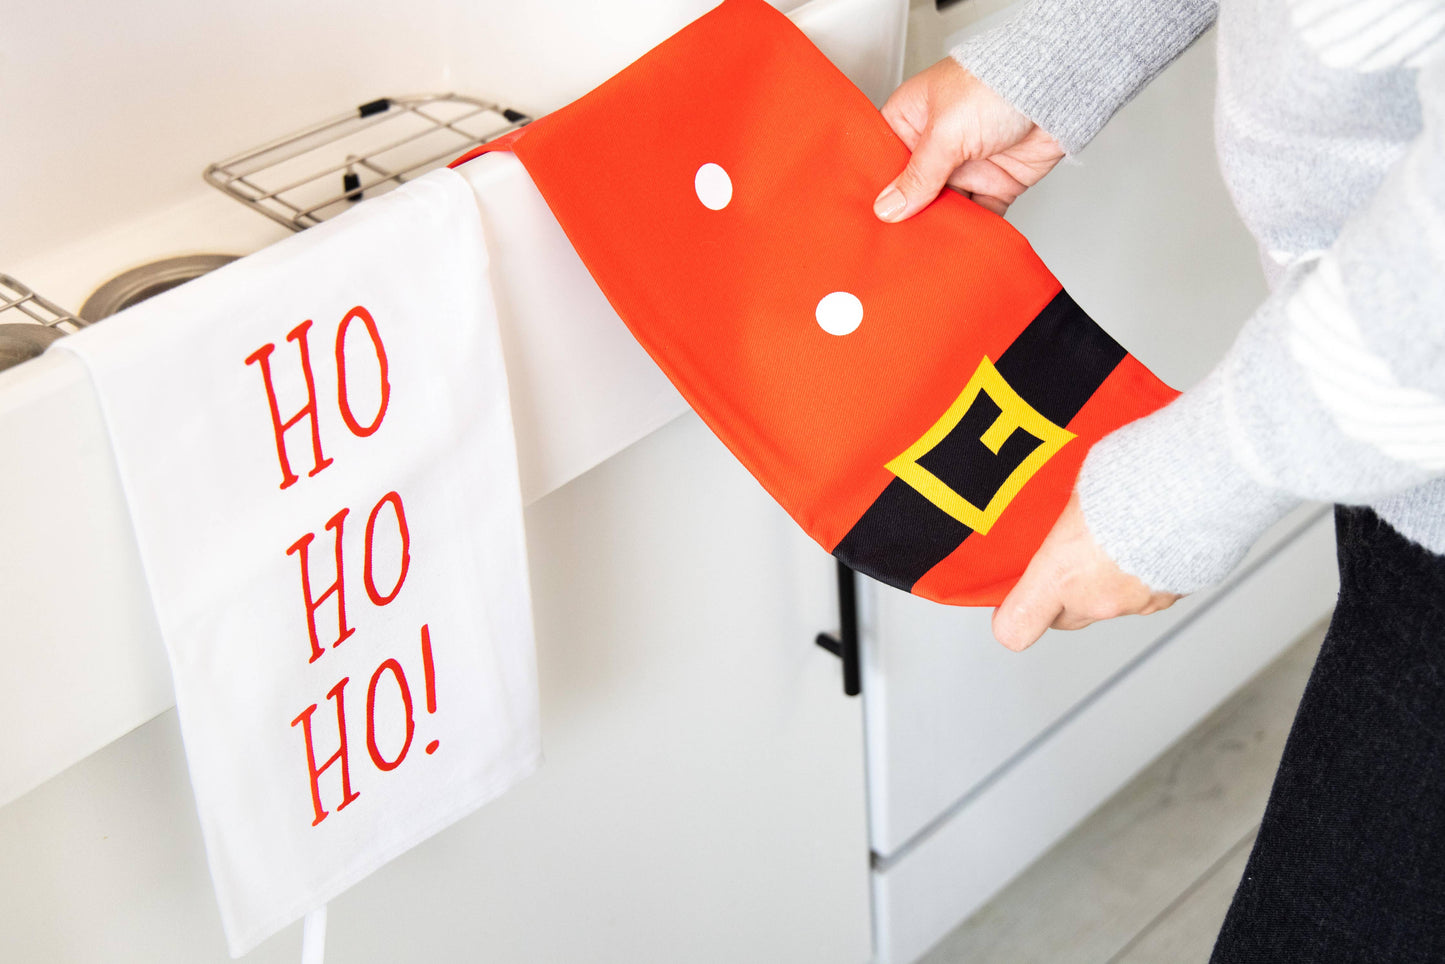 Ho Ho Ho Tea Towel Set, Kitchen Christmas Decor